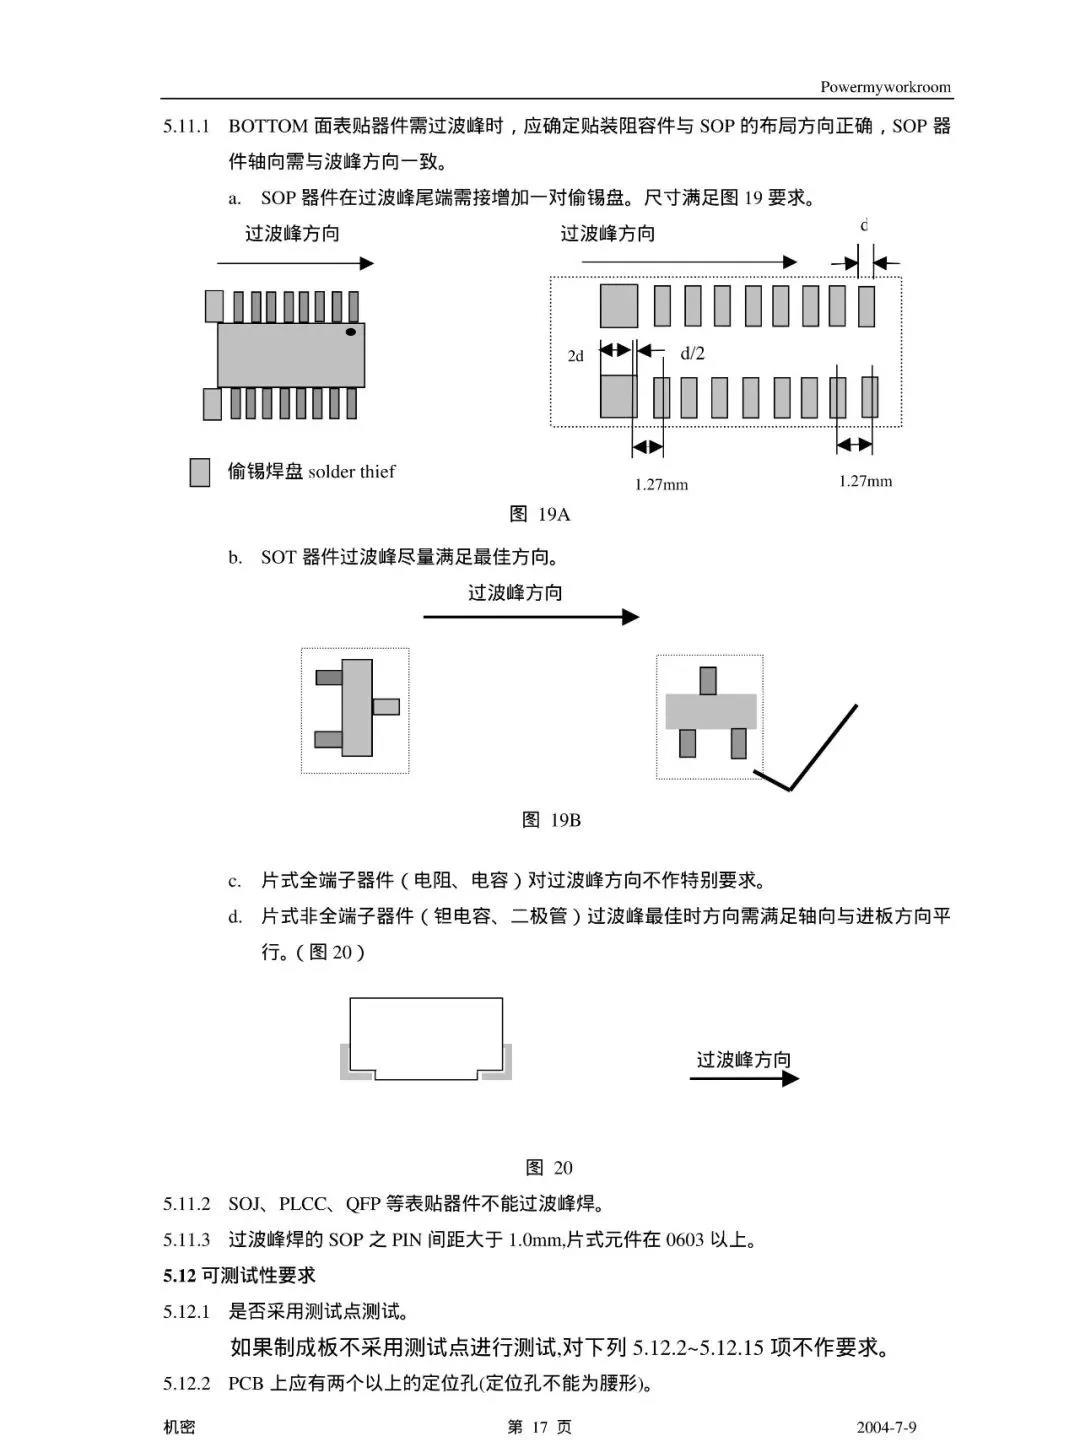 PCB 工艺设计规范(图18)